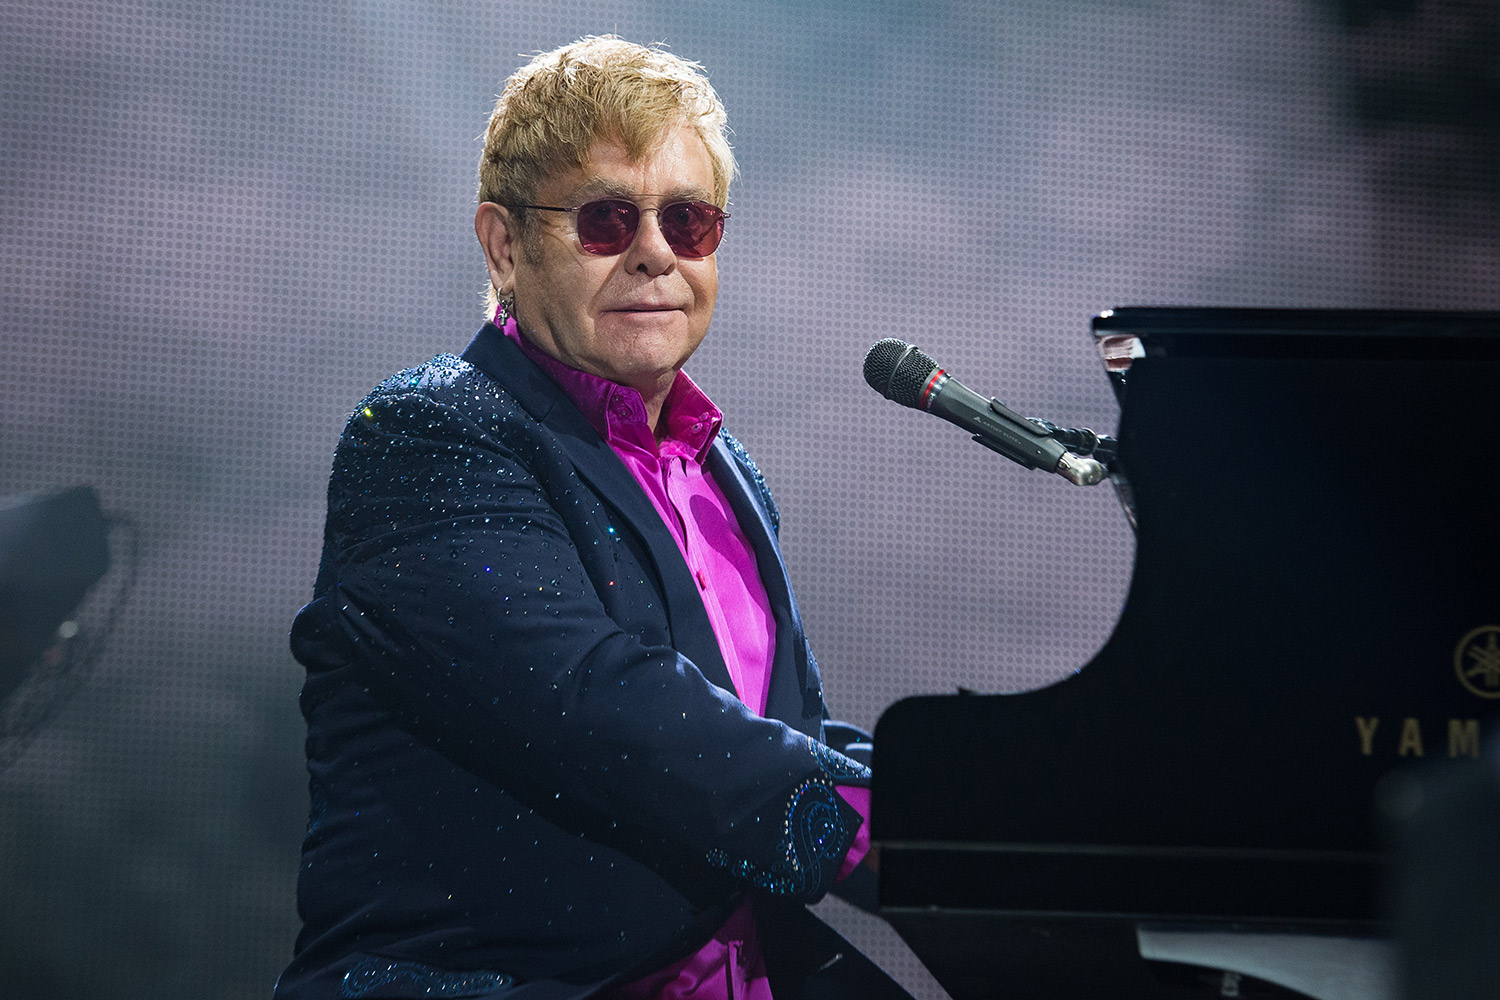 Elton John accusato di molestie sessuali dall'ex guardia del corpo - elton john camicia rosa - Gay.it